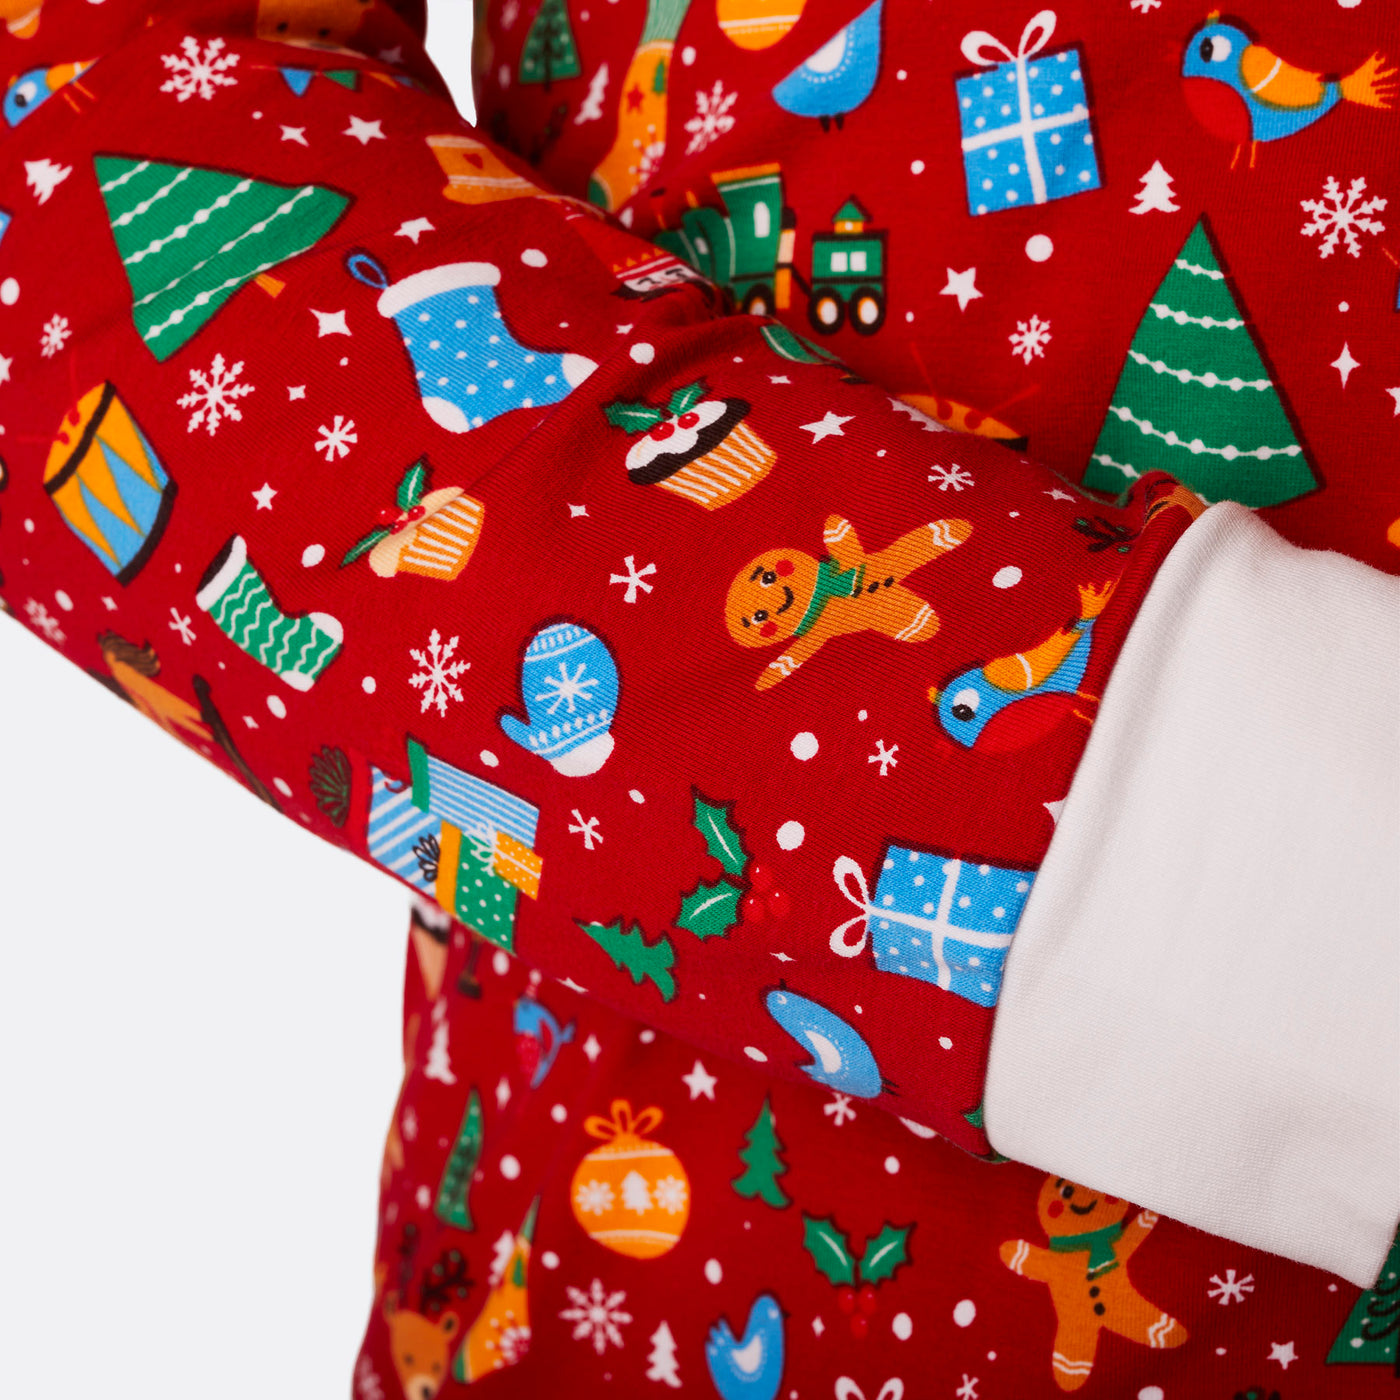 Women's Red Christmas Dream Christmas Pyjamas